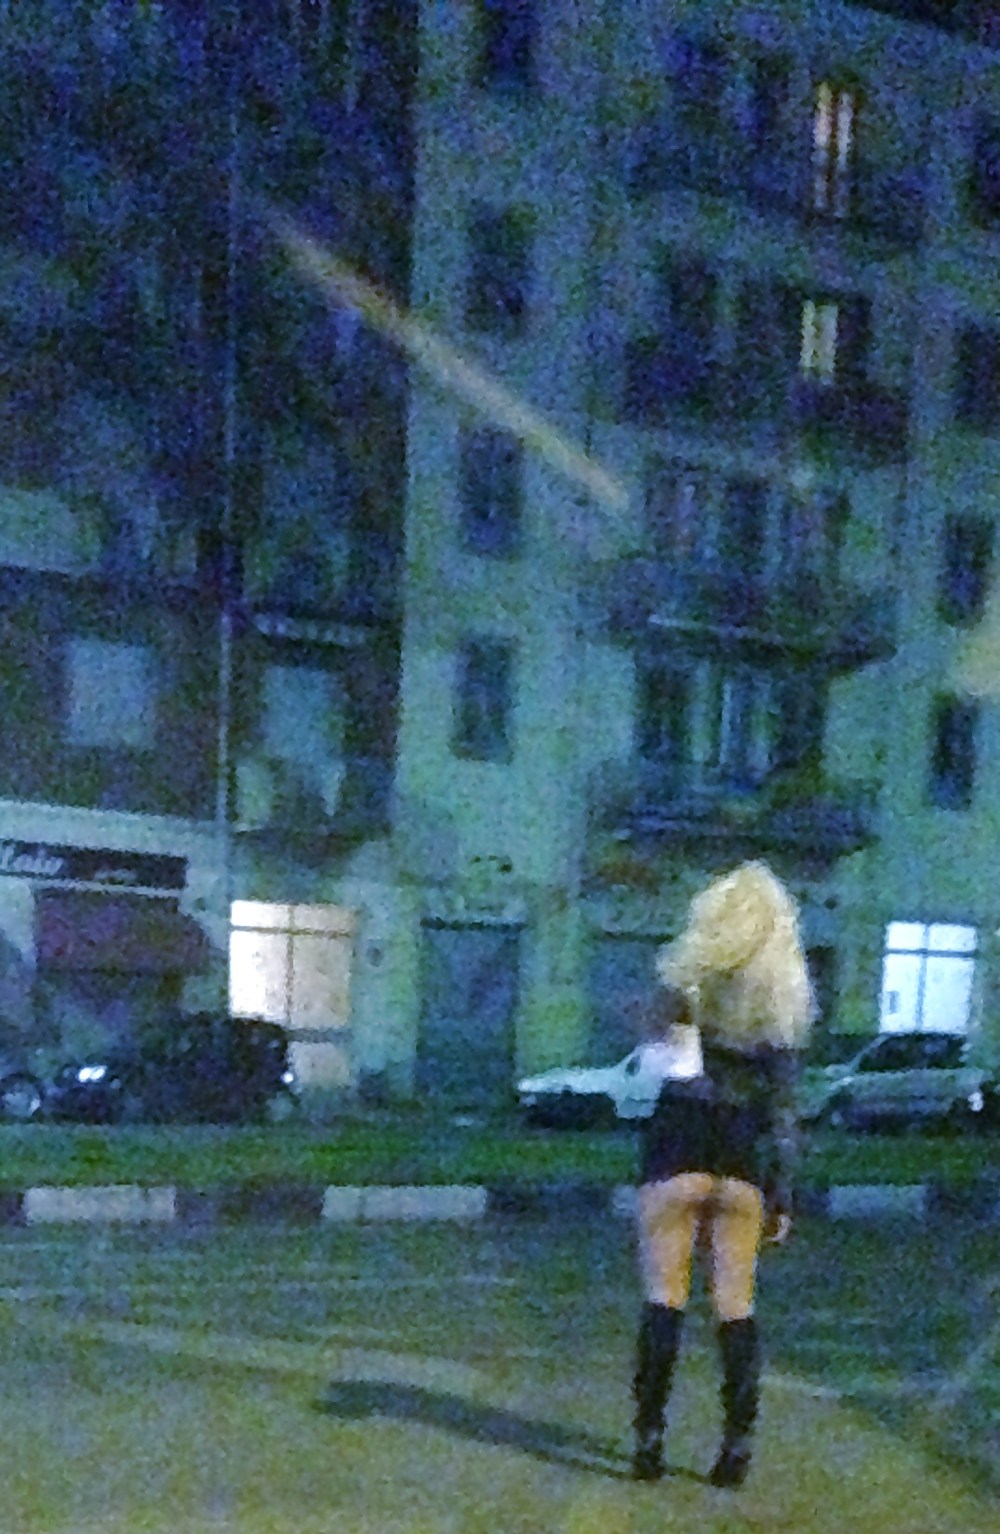 Prostituta di strada - puttane da strada #34249609